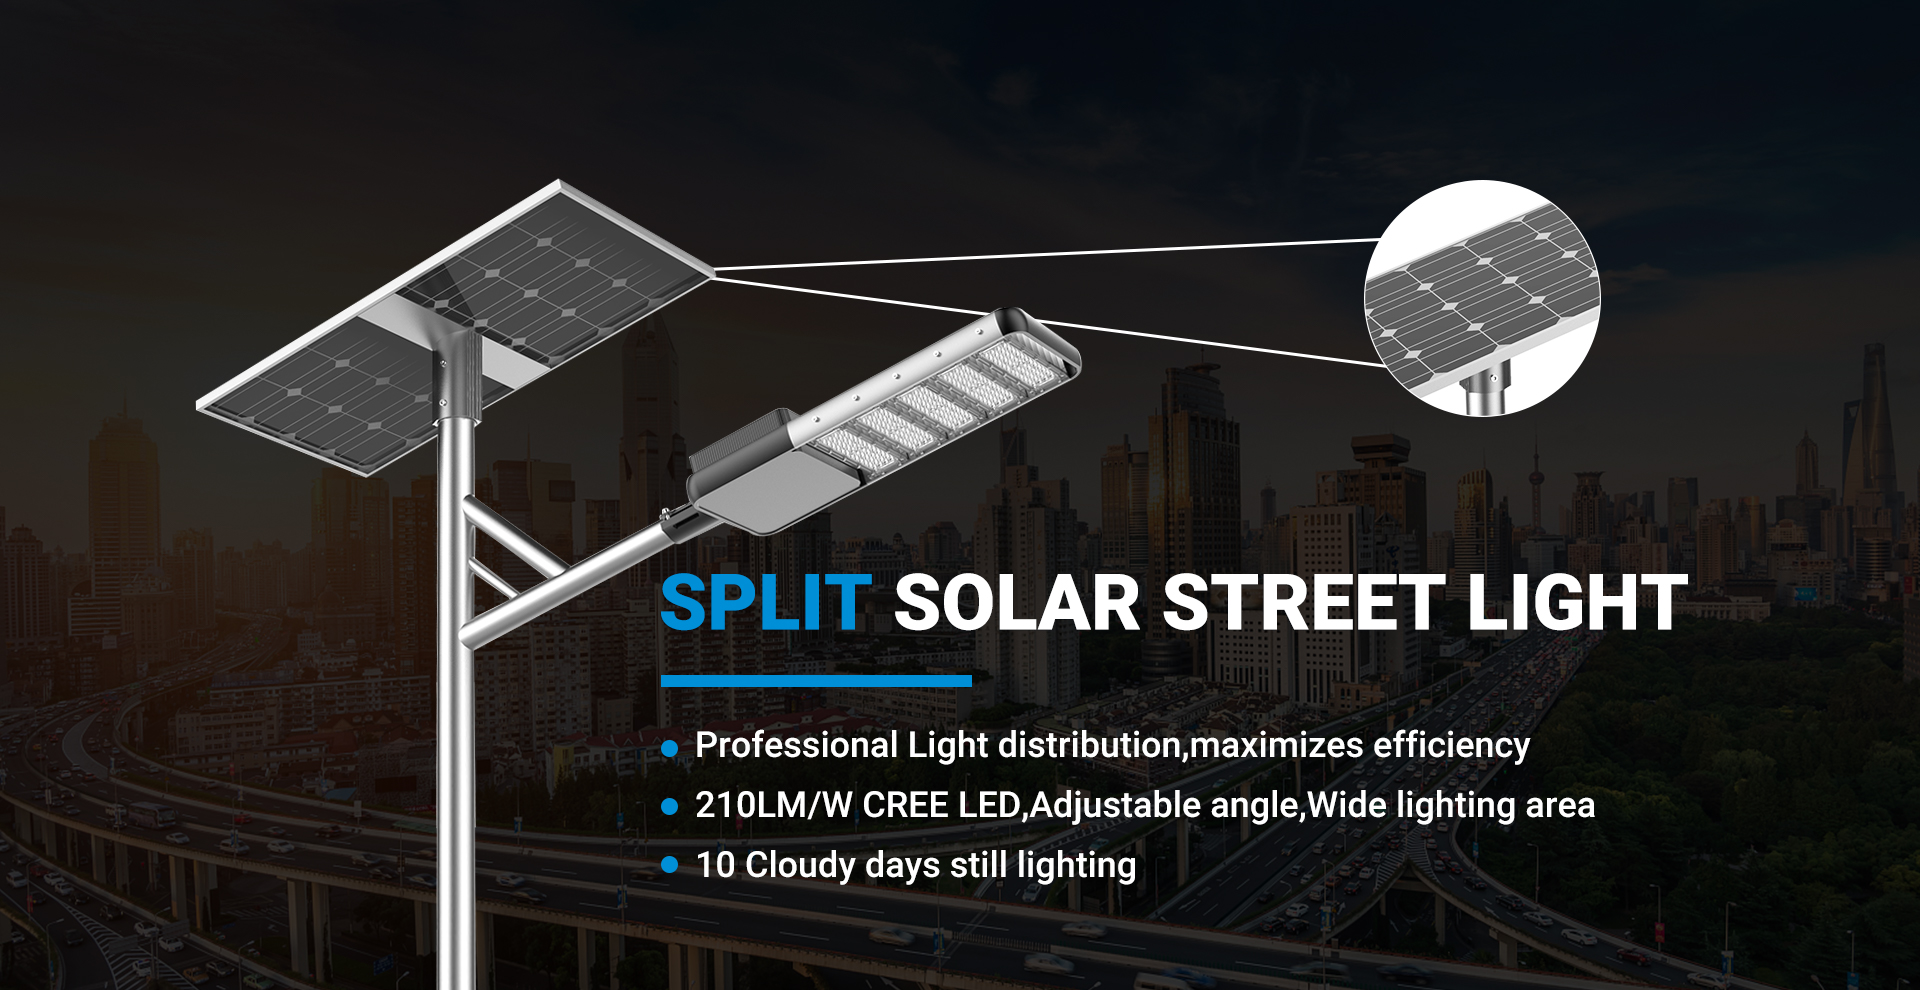 Separat Solar Street Light